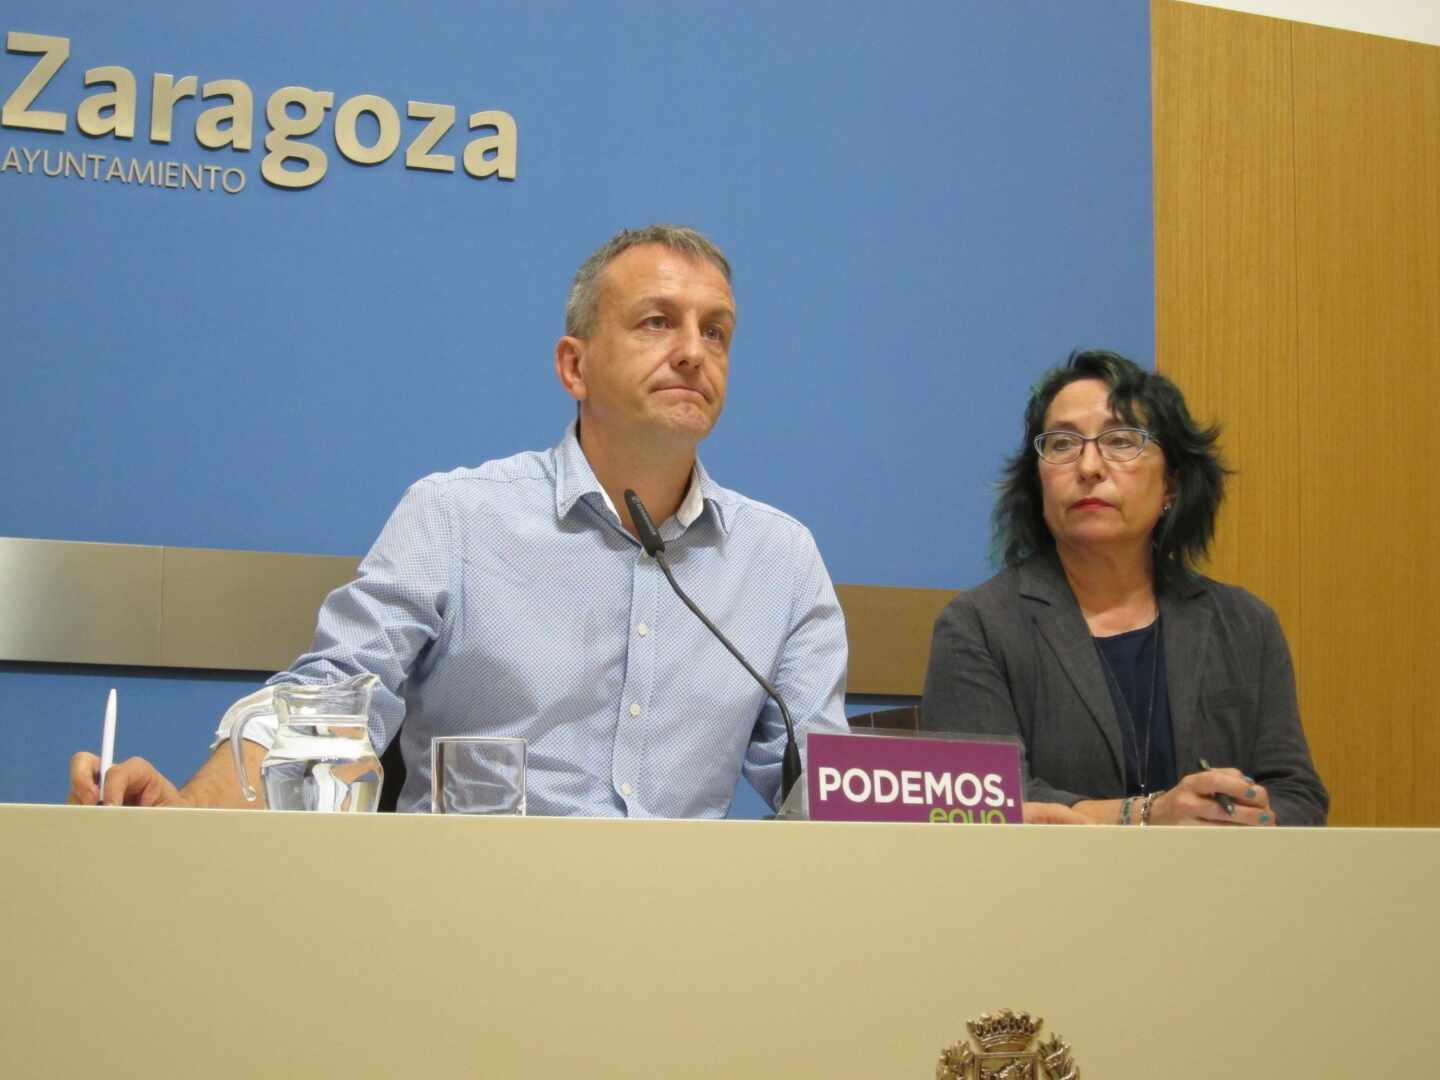 Podemos se niega a acudir al homenaje a Miguel Ángel Blanco en Zaragoza por estar "politizado"